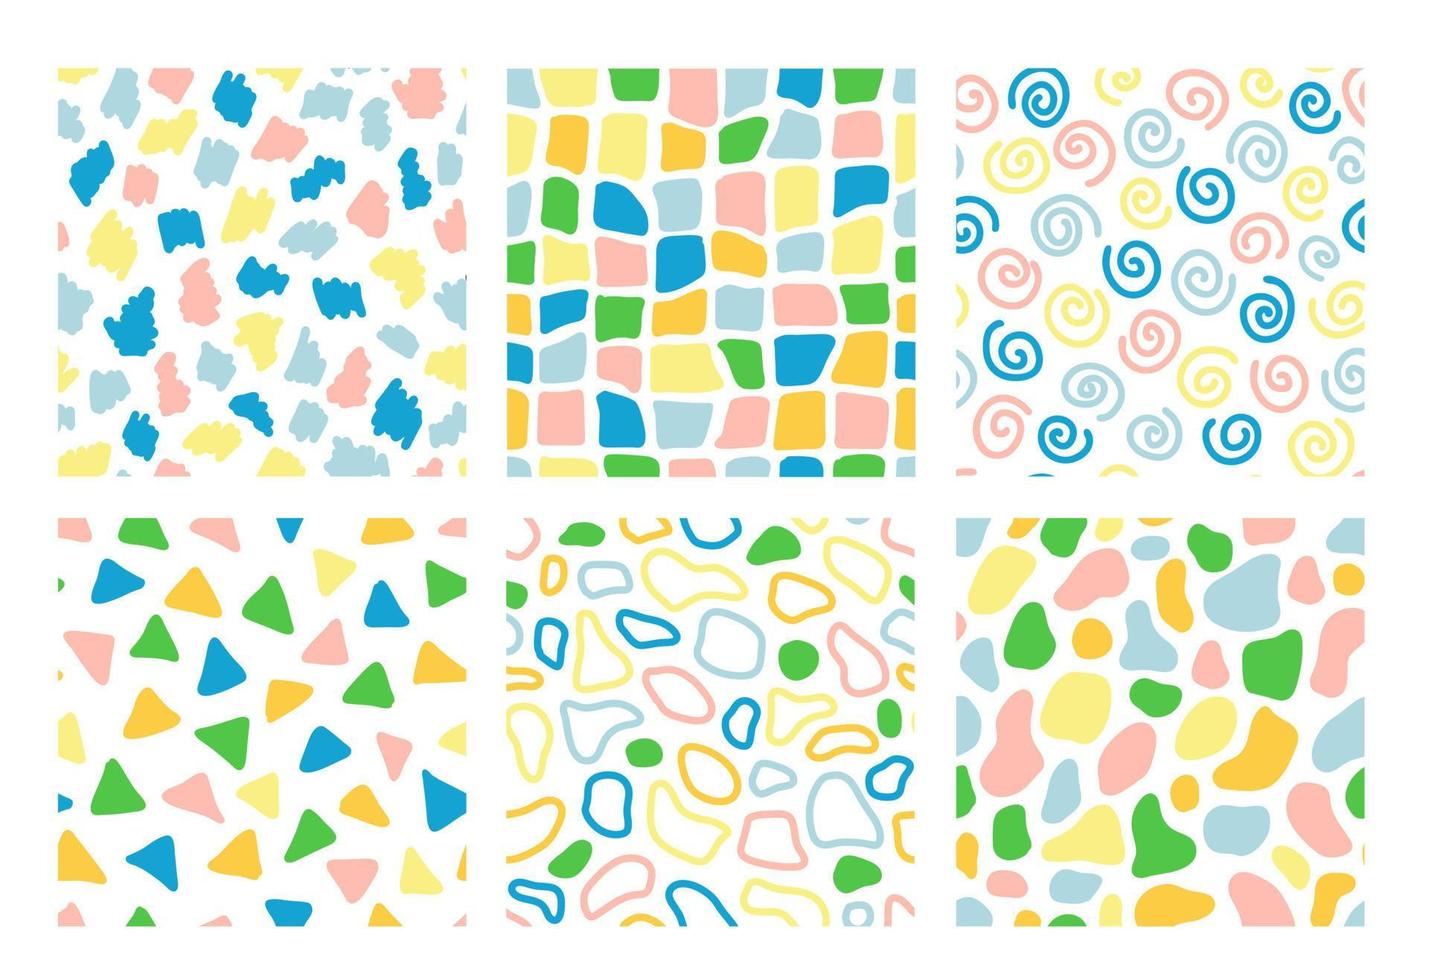 kleurrijke naadloze patroon set met hand getrokken abstracte vormen. trendy vectorachtergrond. frisse moderne geoprint voor kinderkleding, scrapbooking, behang vector